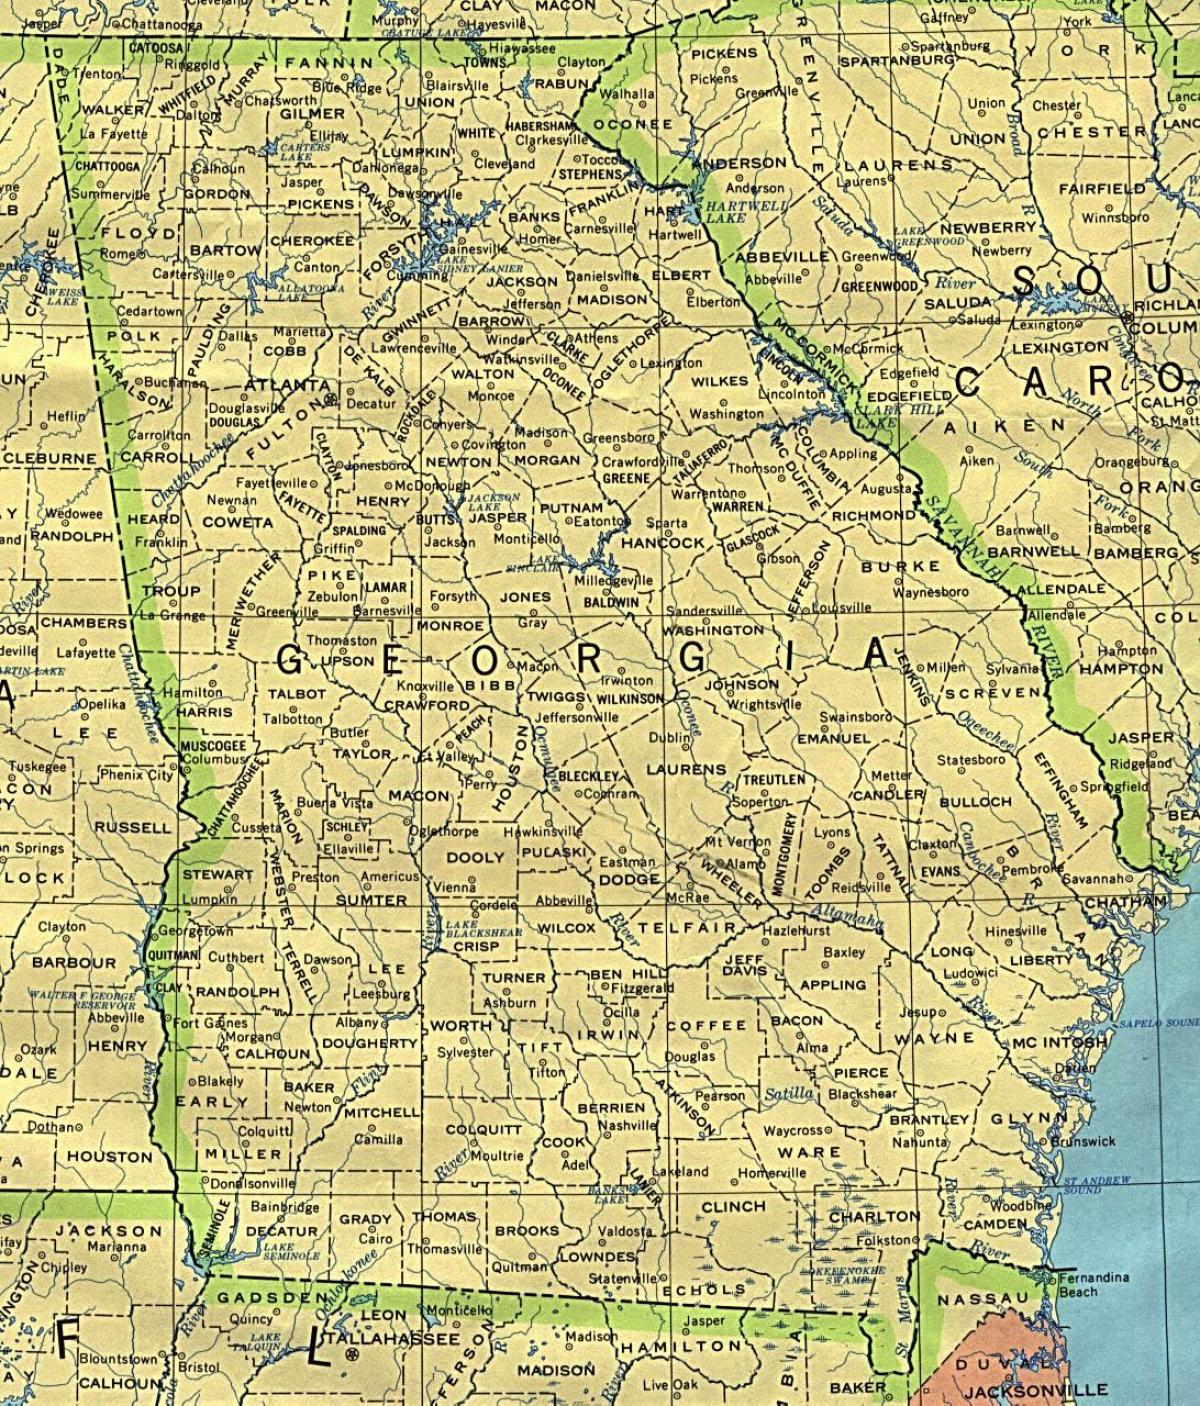 kort af Georgia borgir